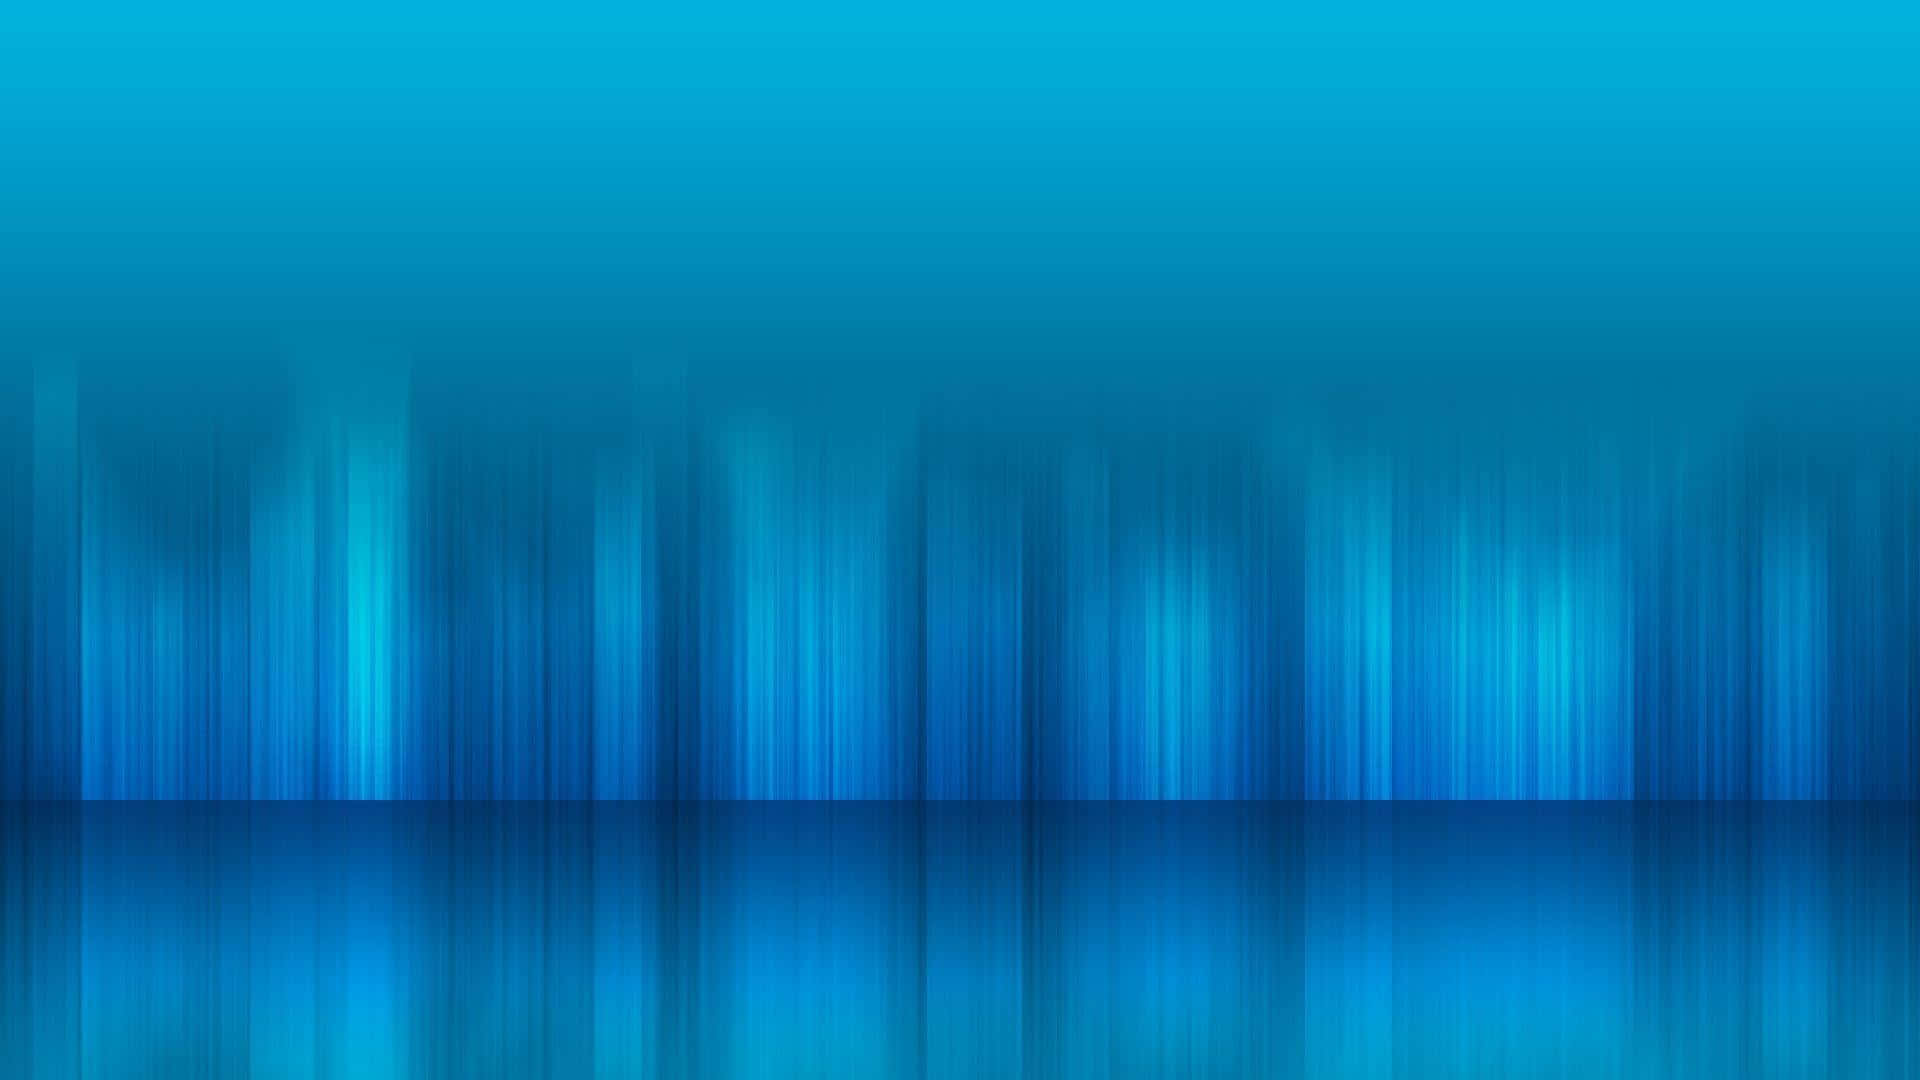 Blue Desktop Wallpaper Featuring a Calming Gradient Pattern